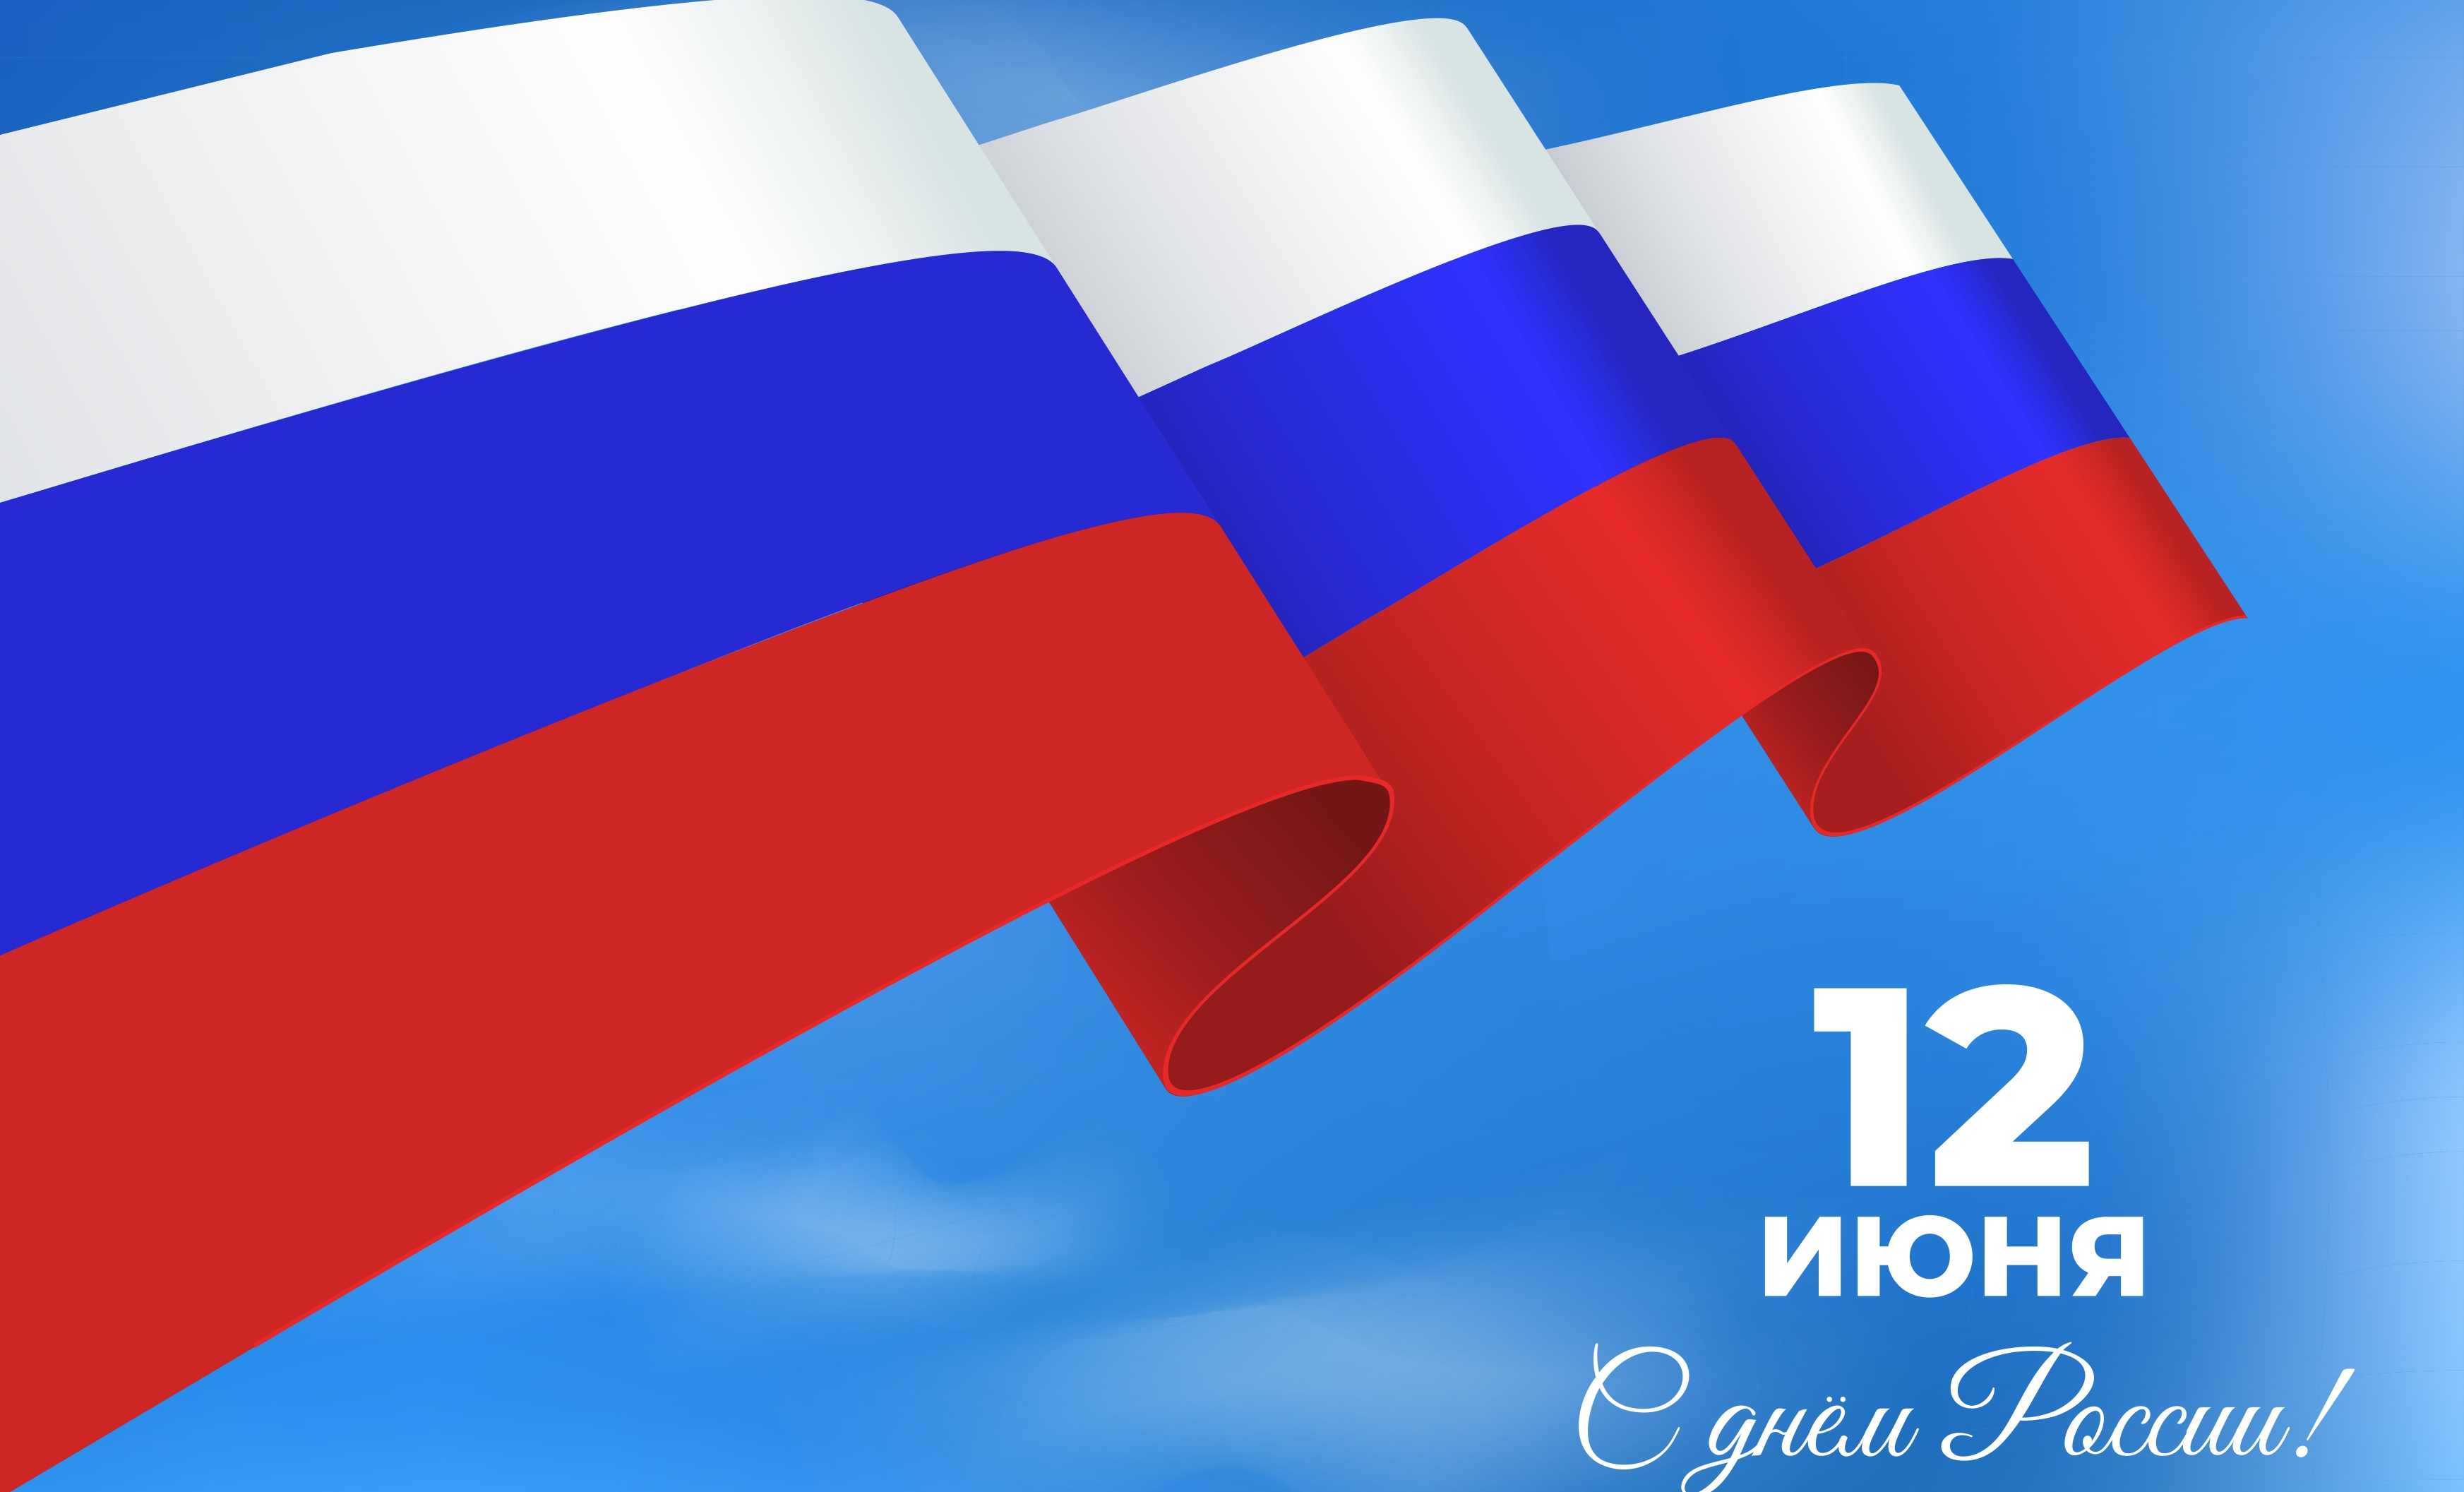 ФлексСофт поздравляет с Днем России